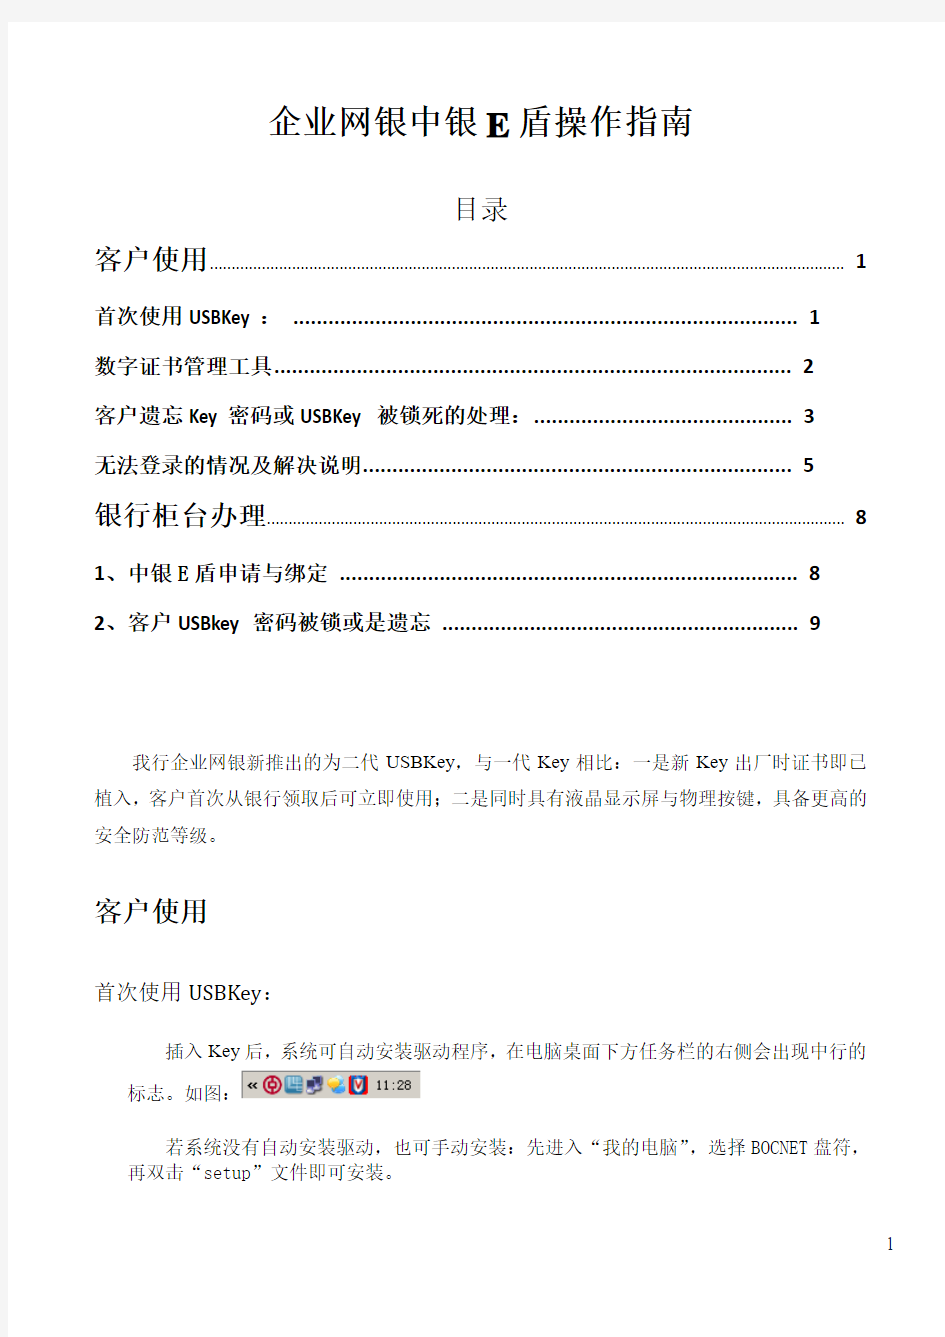 中国银行企业USBKEY操作指南